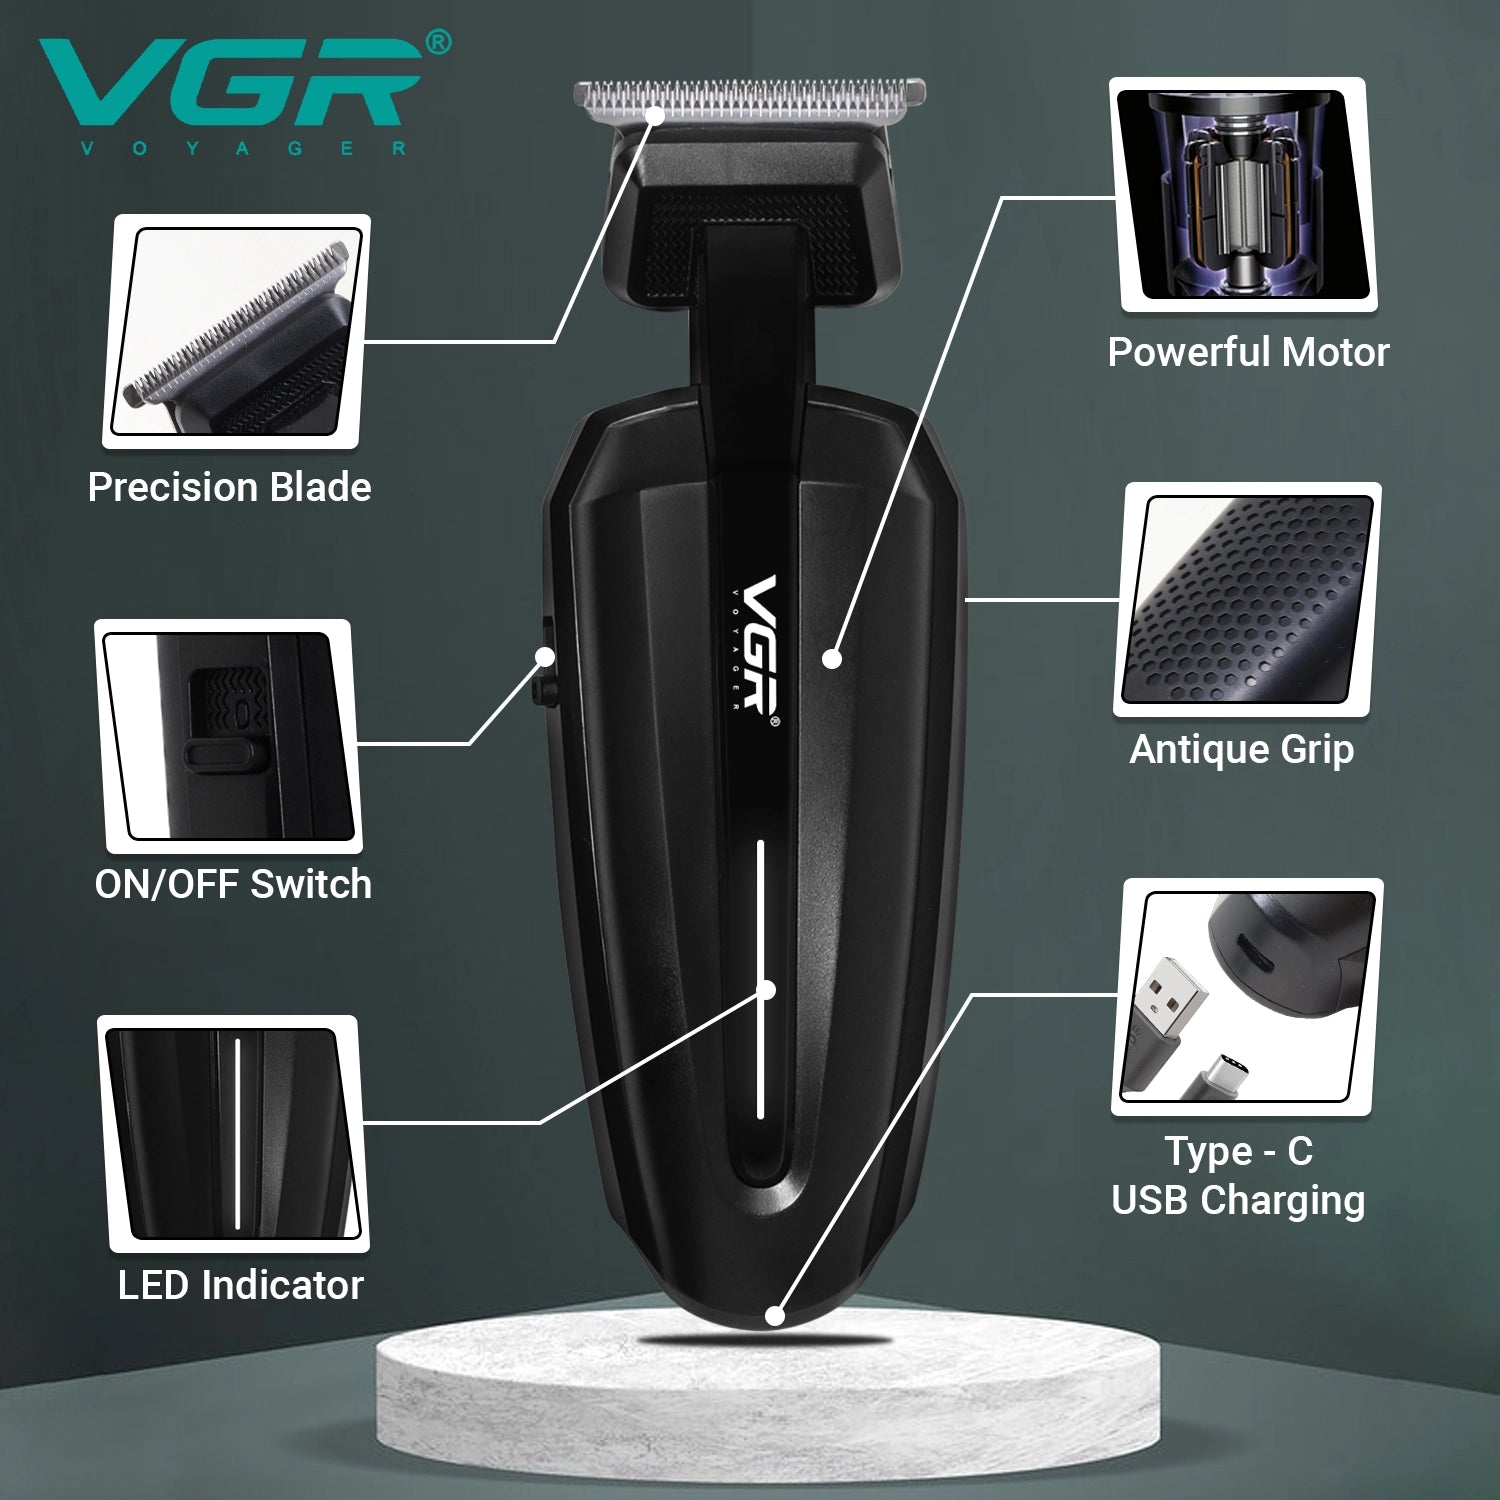 VGR V-952 Hair Trimmer For Men, Black